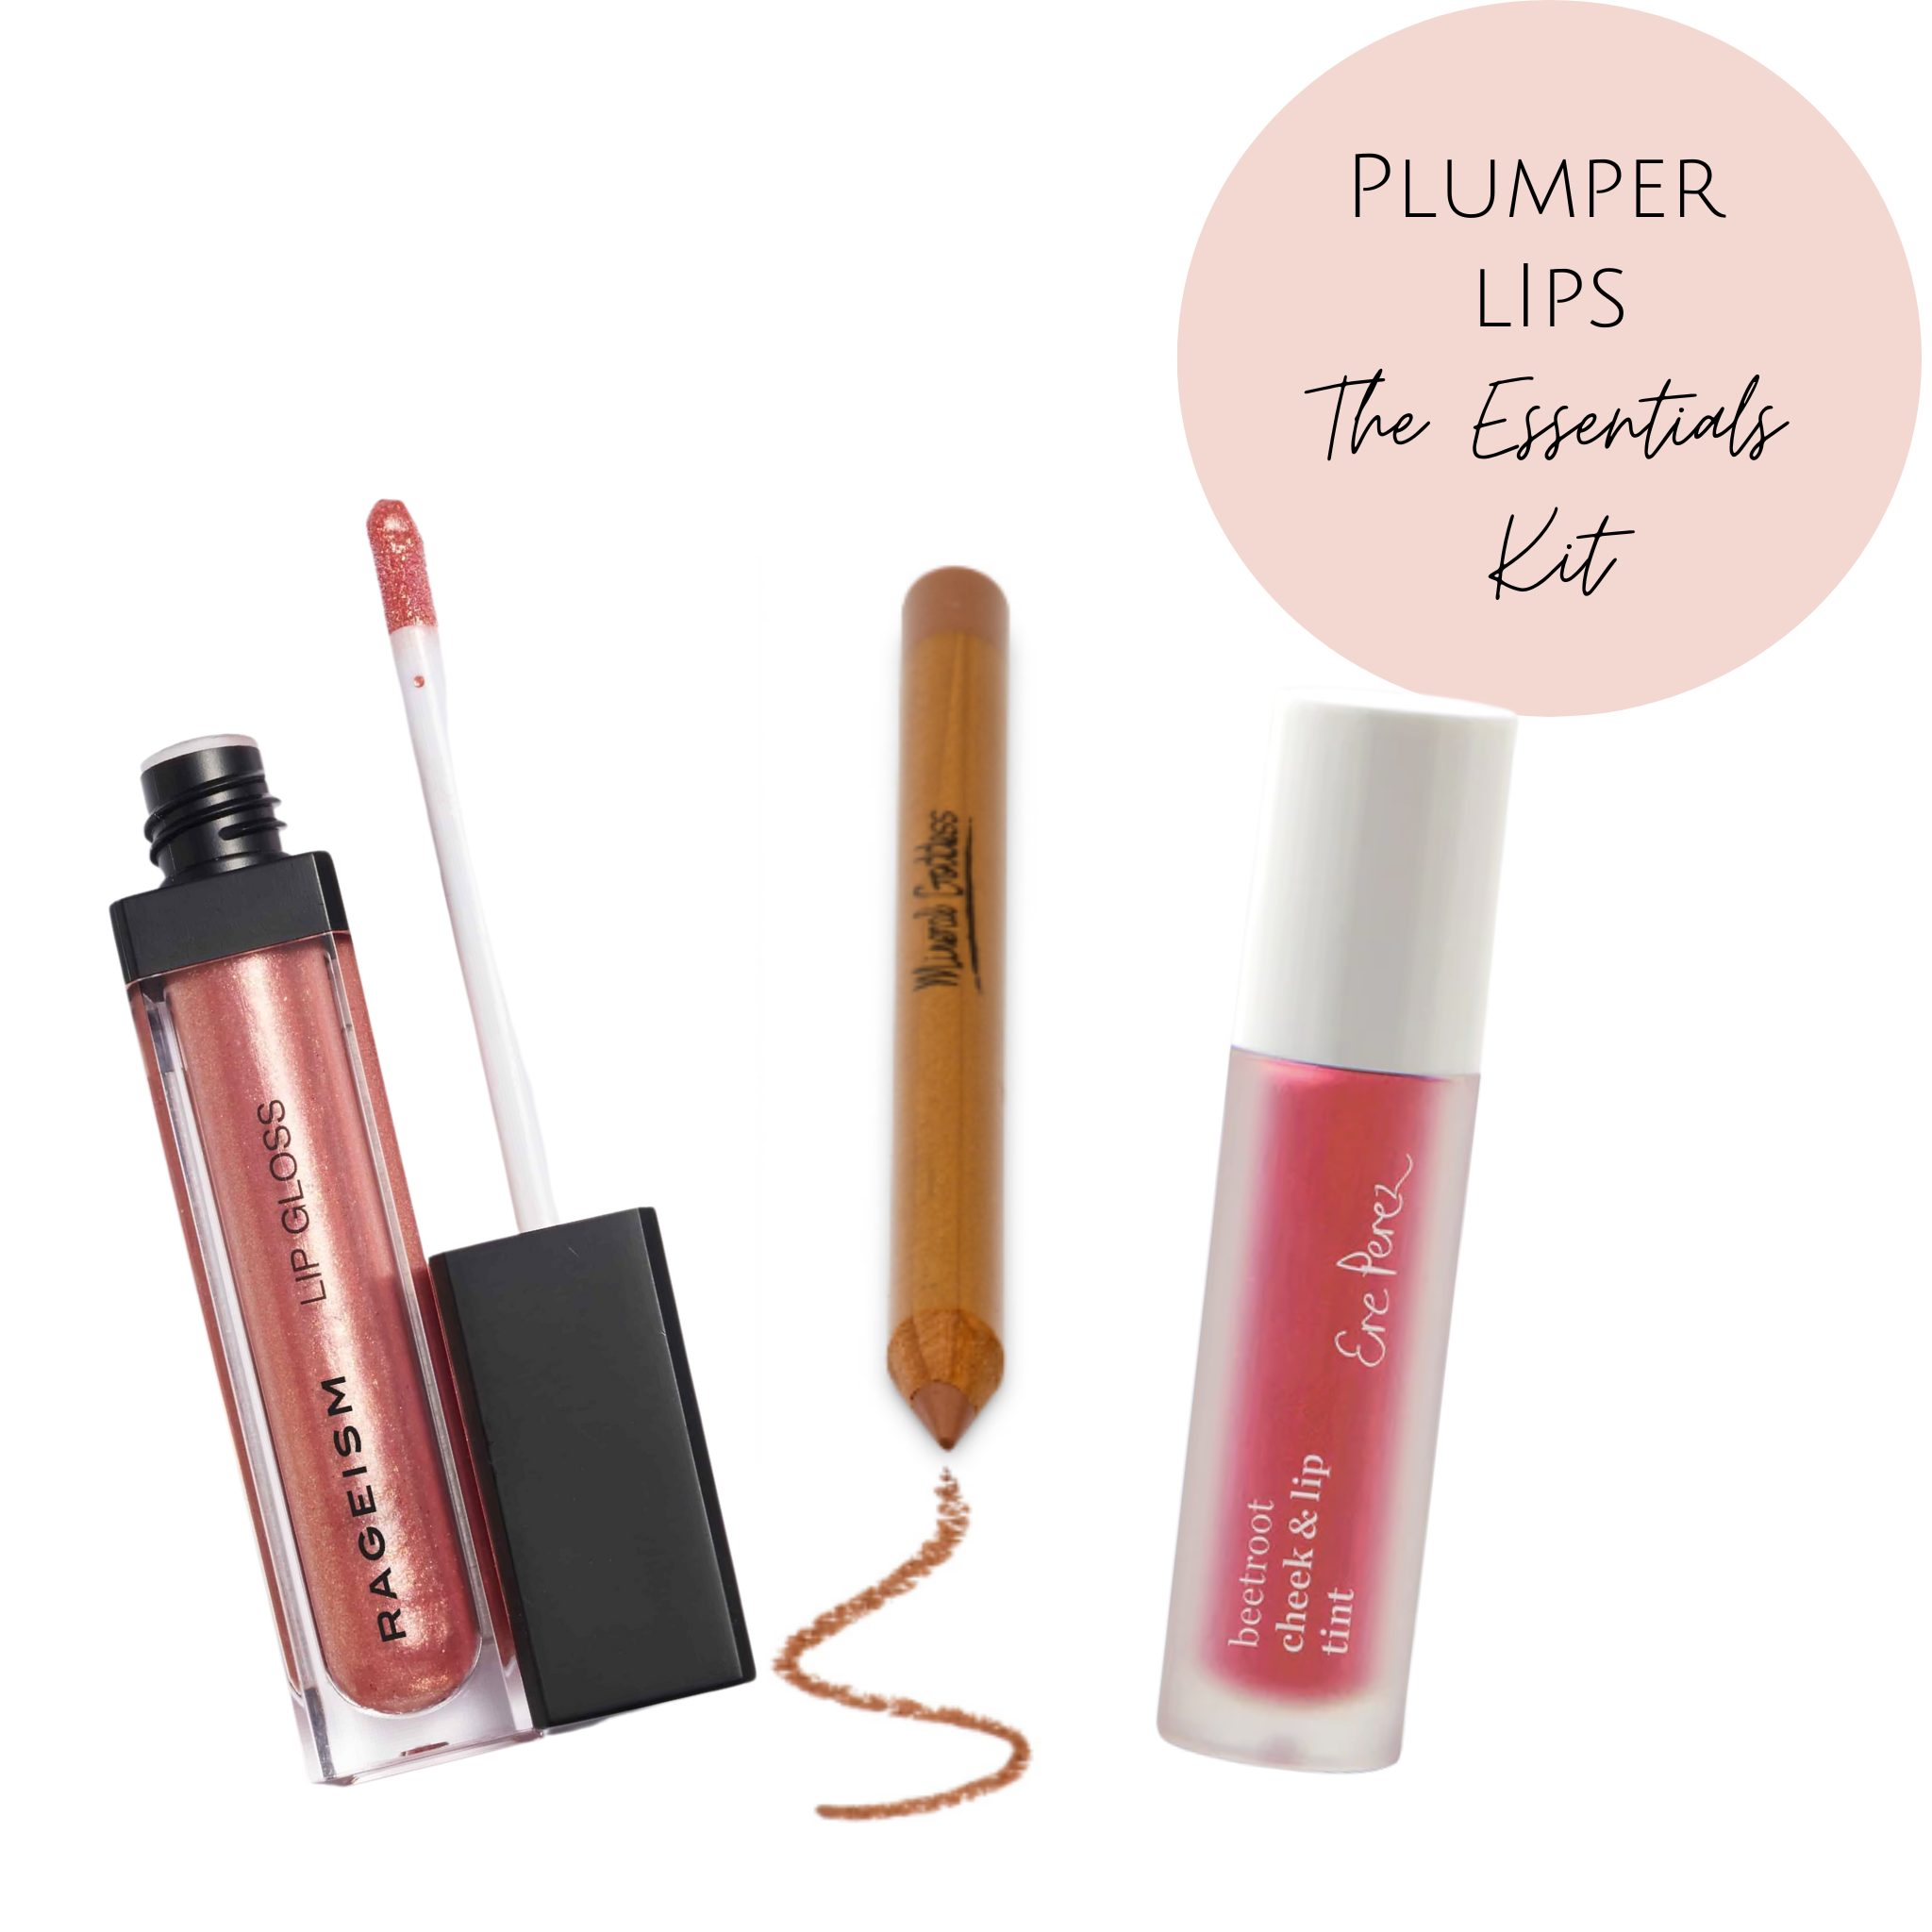 Plumper Lips The Essentials Kit